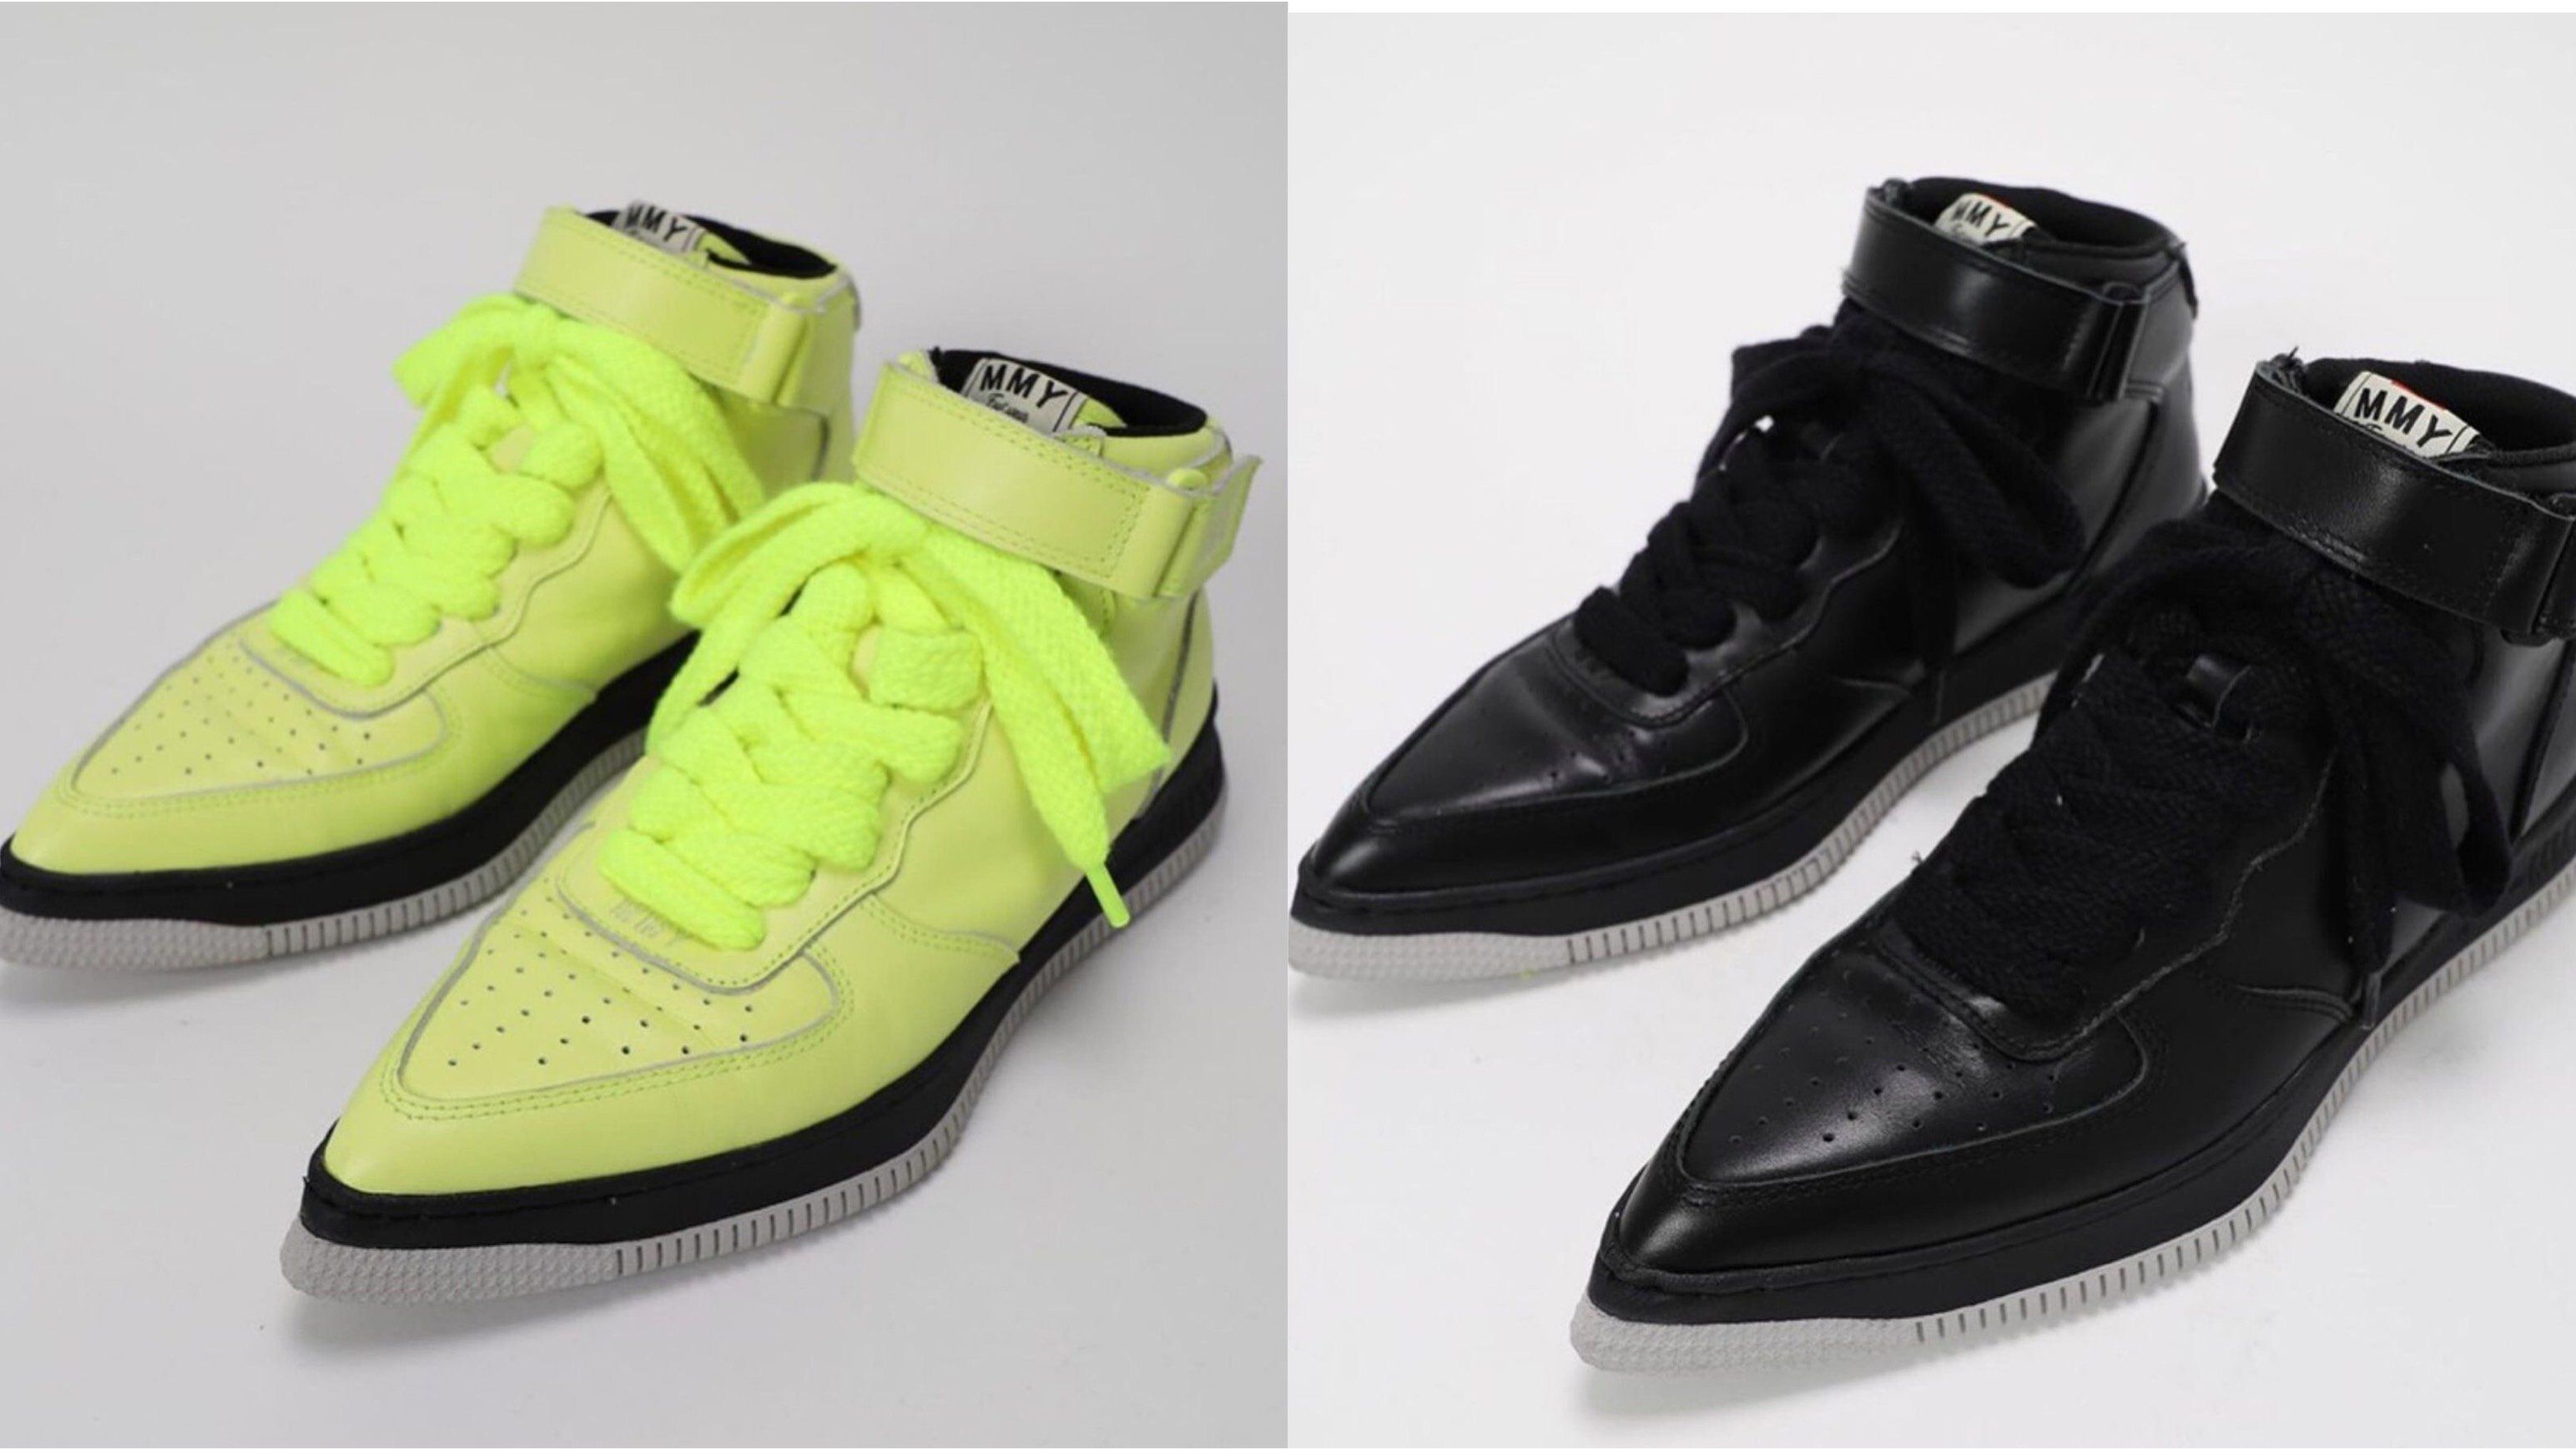 Giày Nike mũi nhọn gây tranh cãi vì thiết kế “quái dị”